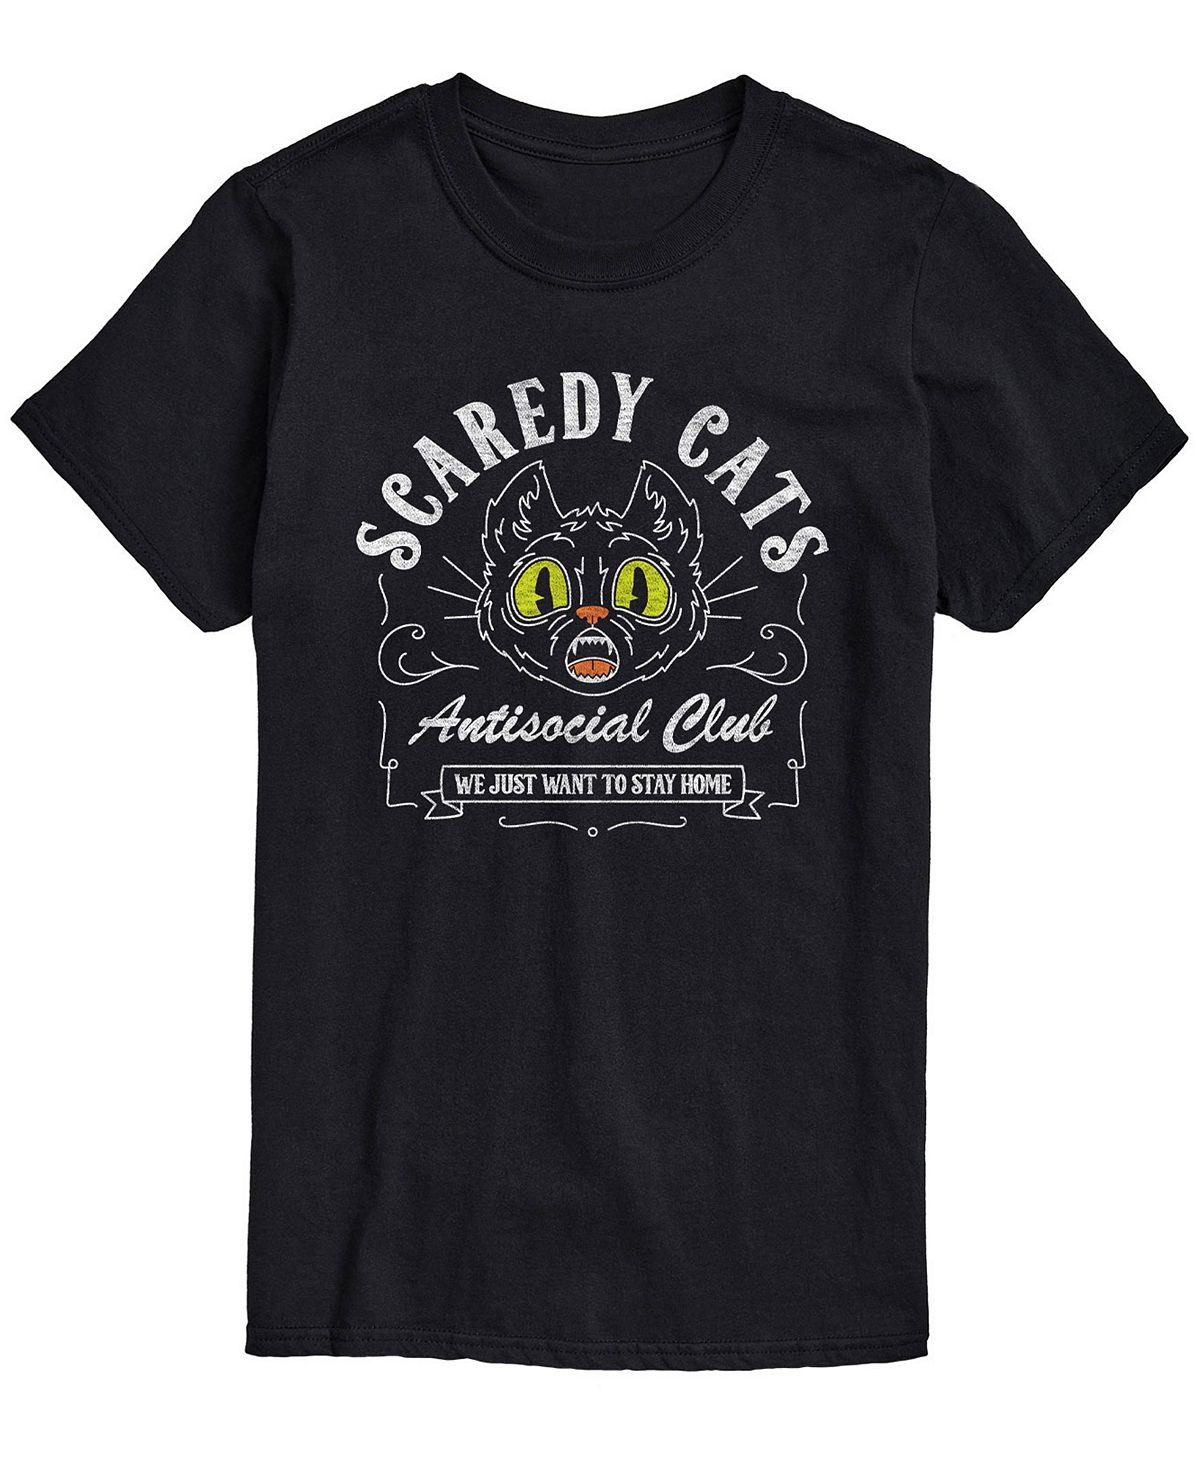 Мужская футболка классического кроя Scaredy Cats AIRWAVES